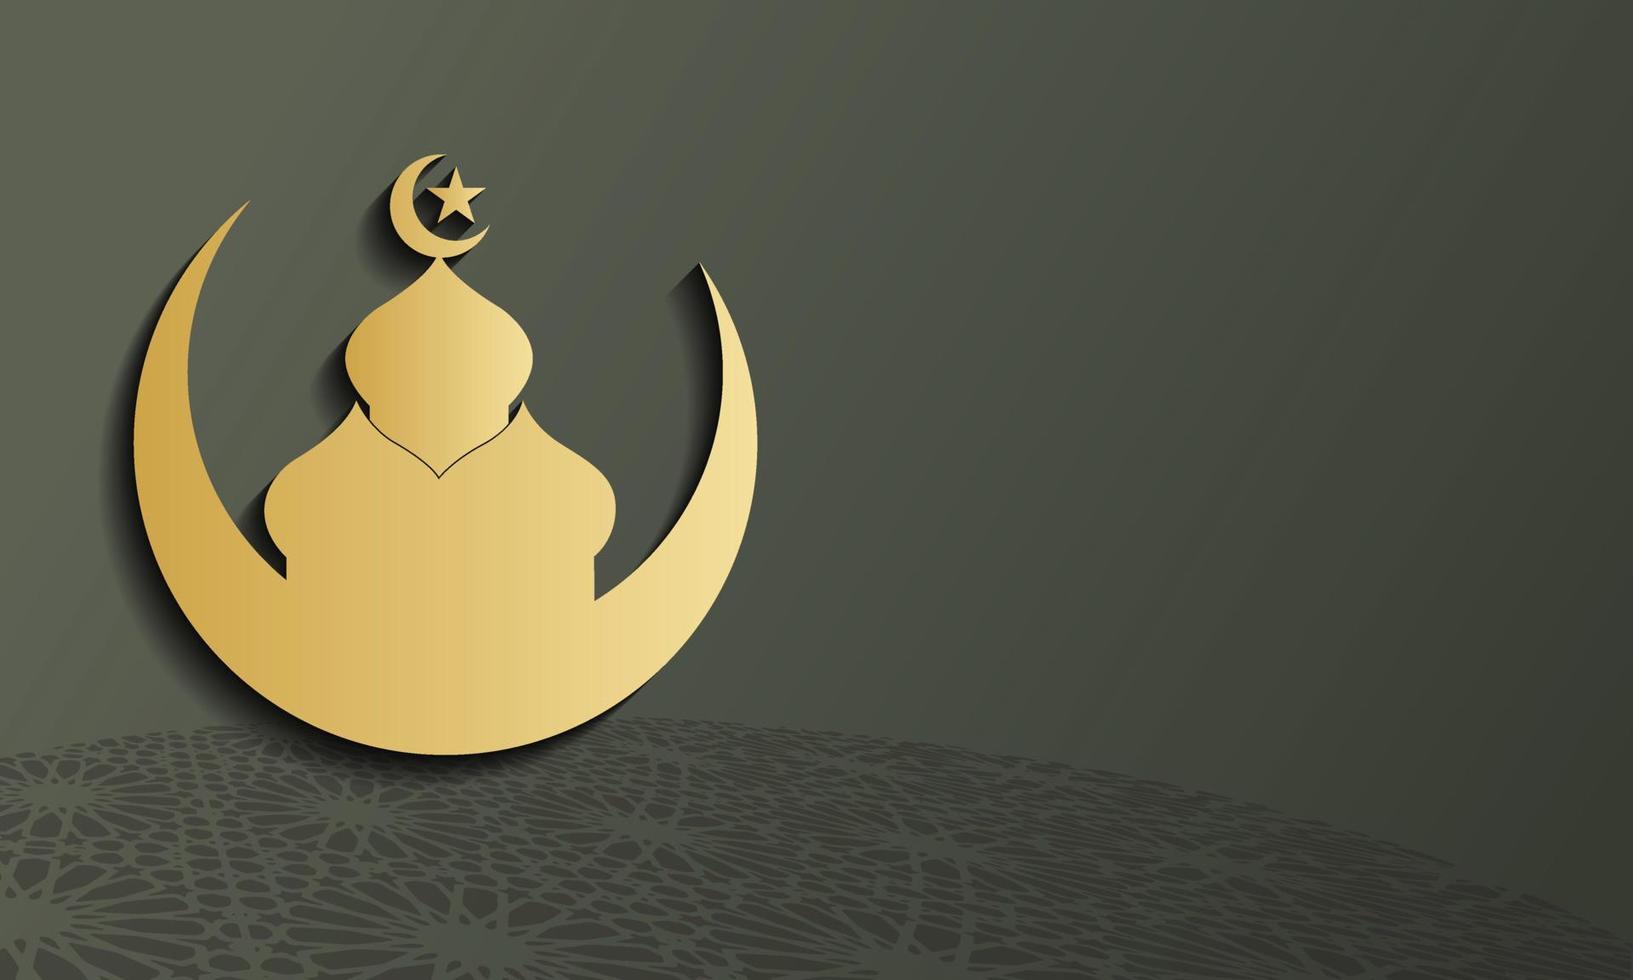 silueta dorada de la mezquita sobre fondo gris abstracto, concepto para el mes sagrado de la comunidad musulmana ramadan kareem vector